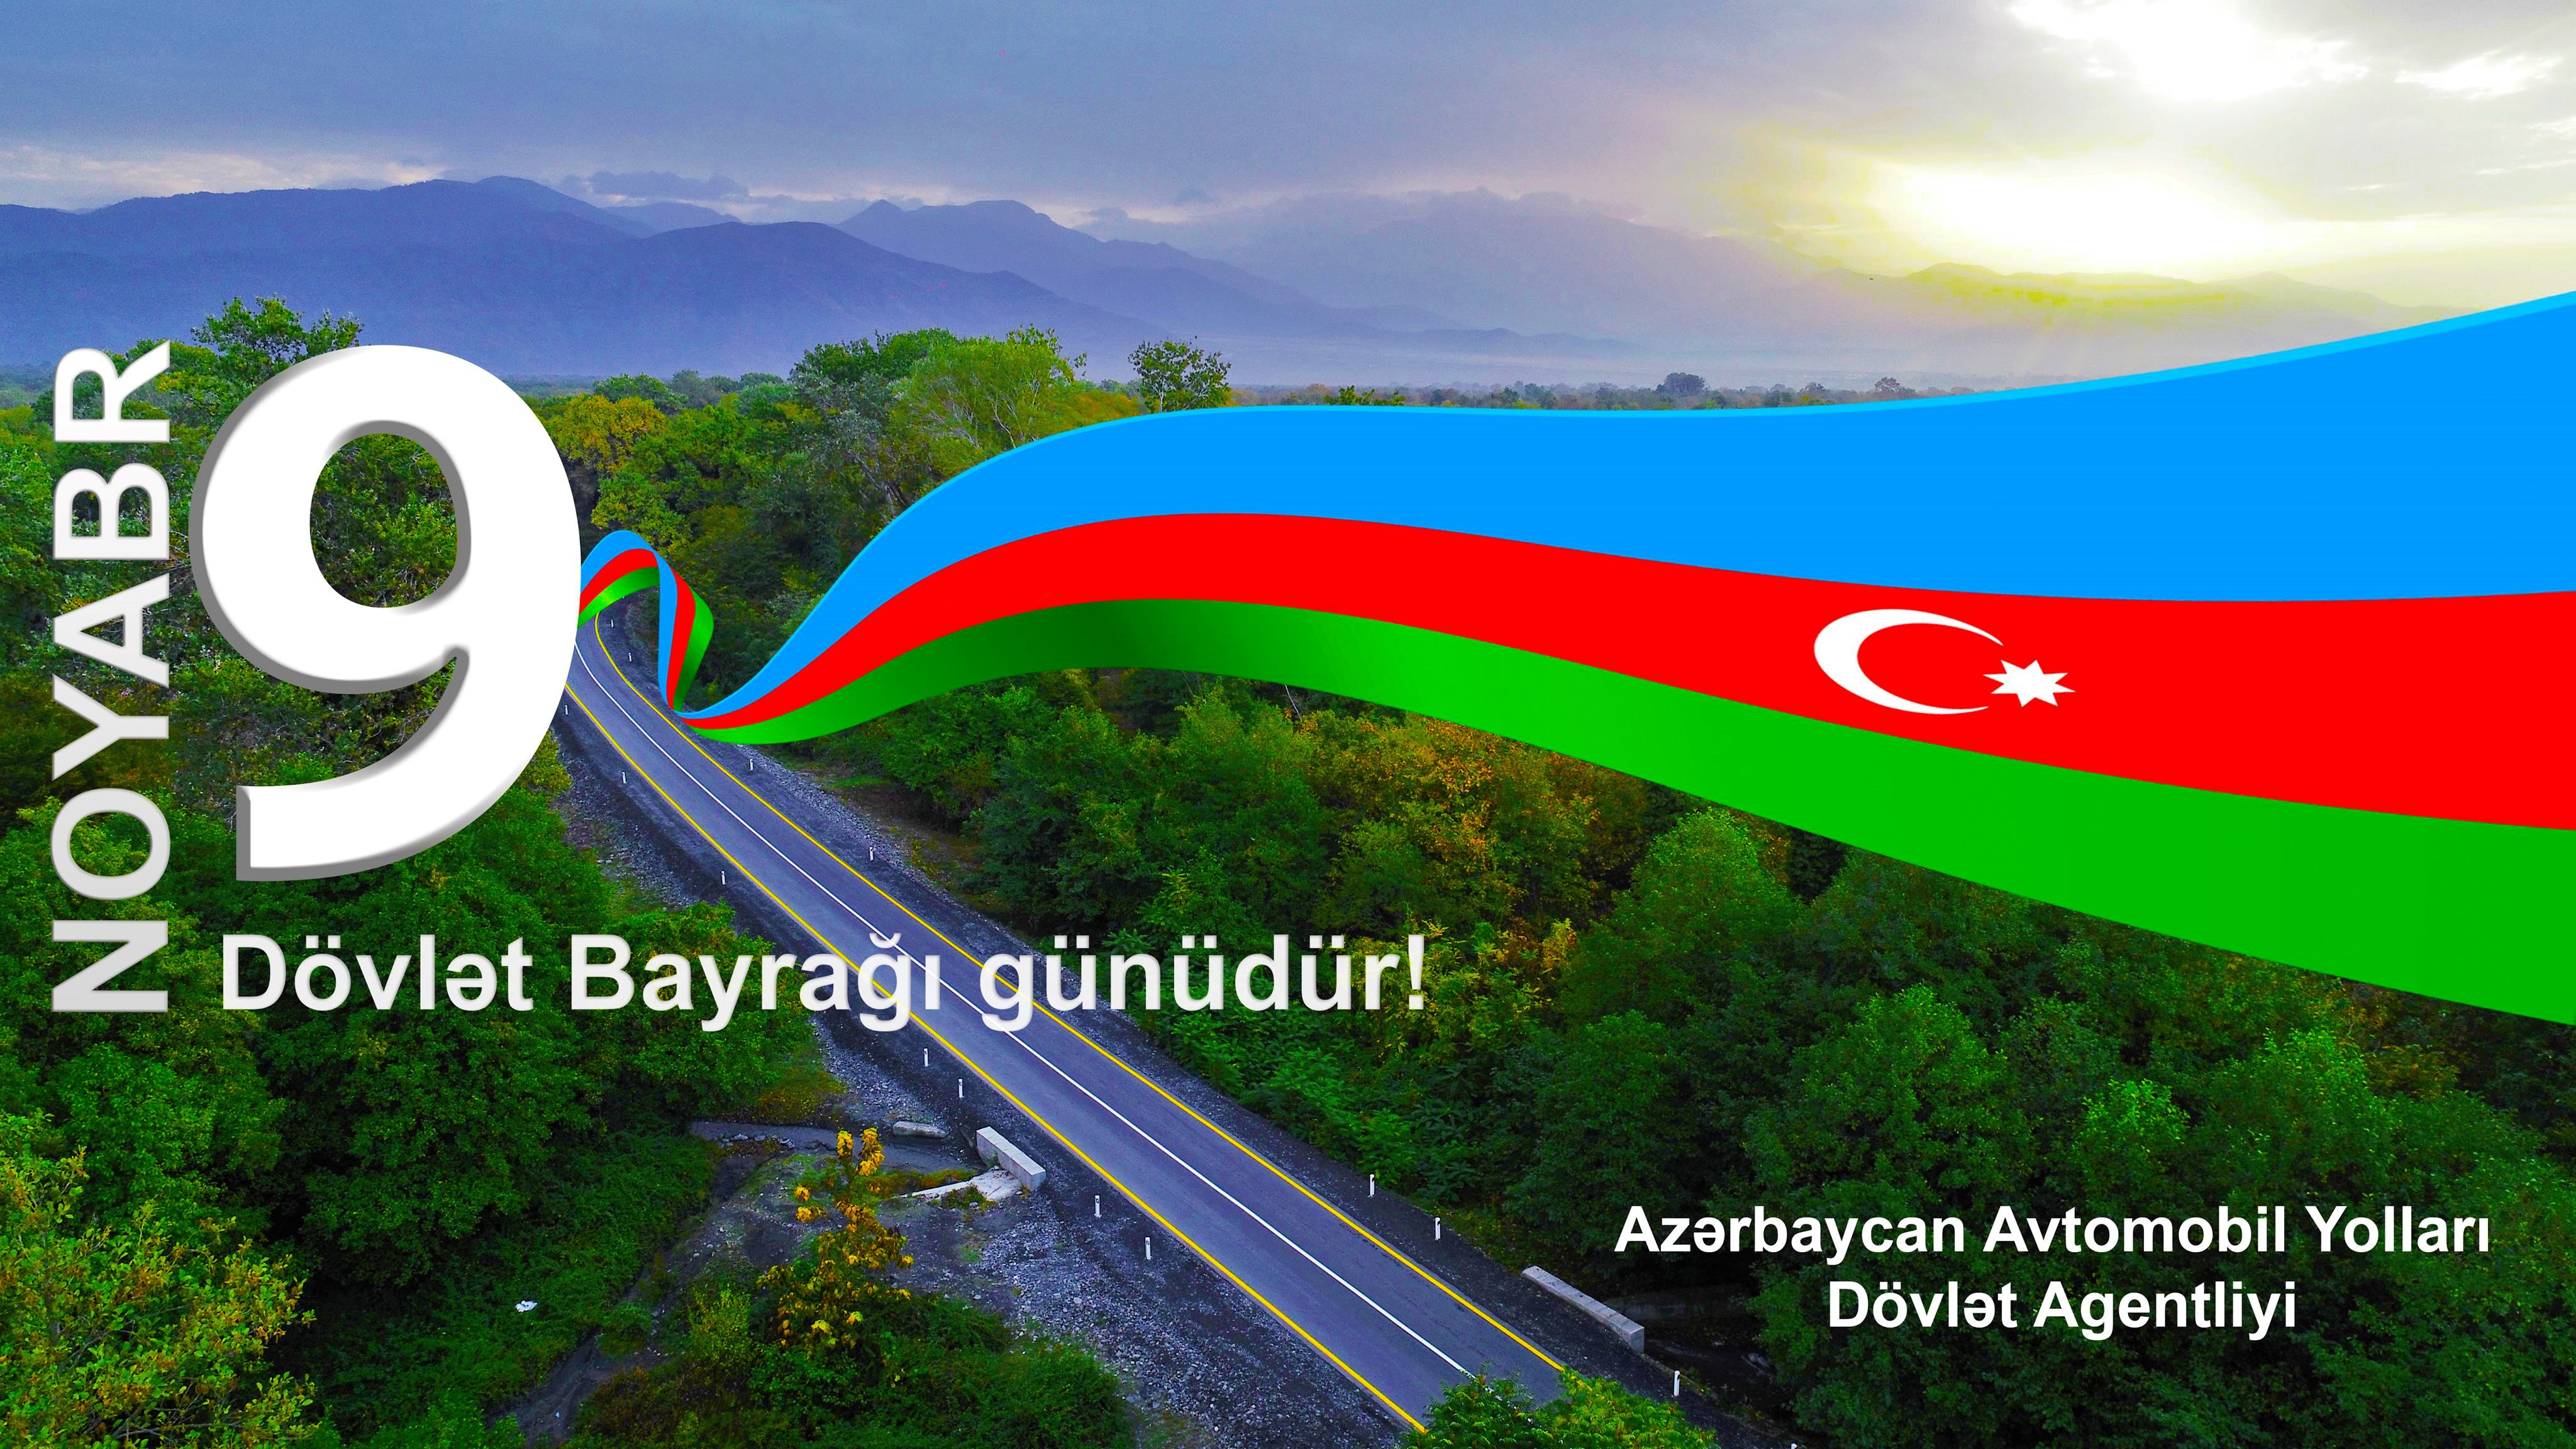 11 9 noyabr - Azərbaycan Respublikasının Dövlət Bayrağı Günü